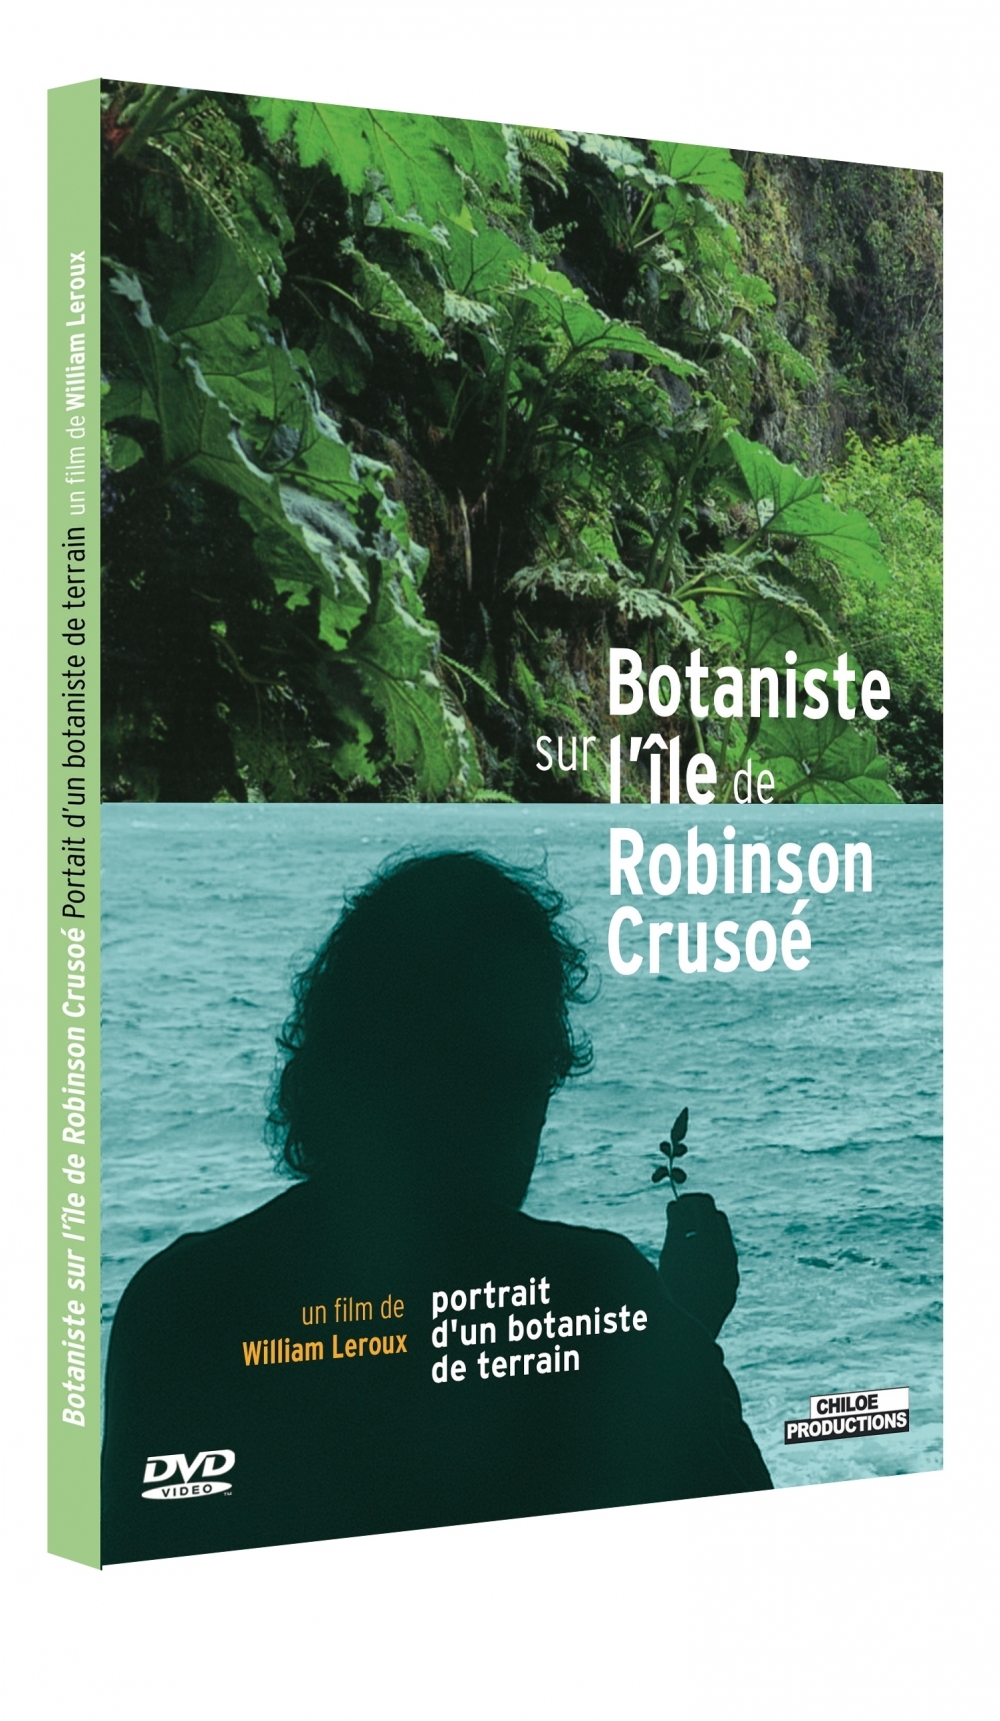 Botaniste sur l'île de Robinson Crusoé - Chiloé Productions